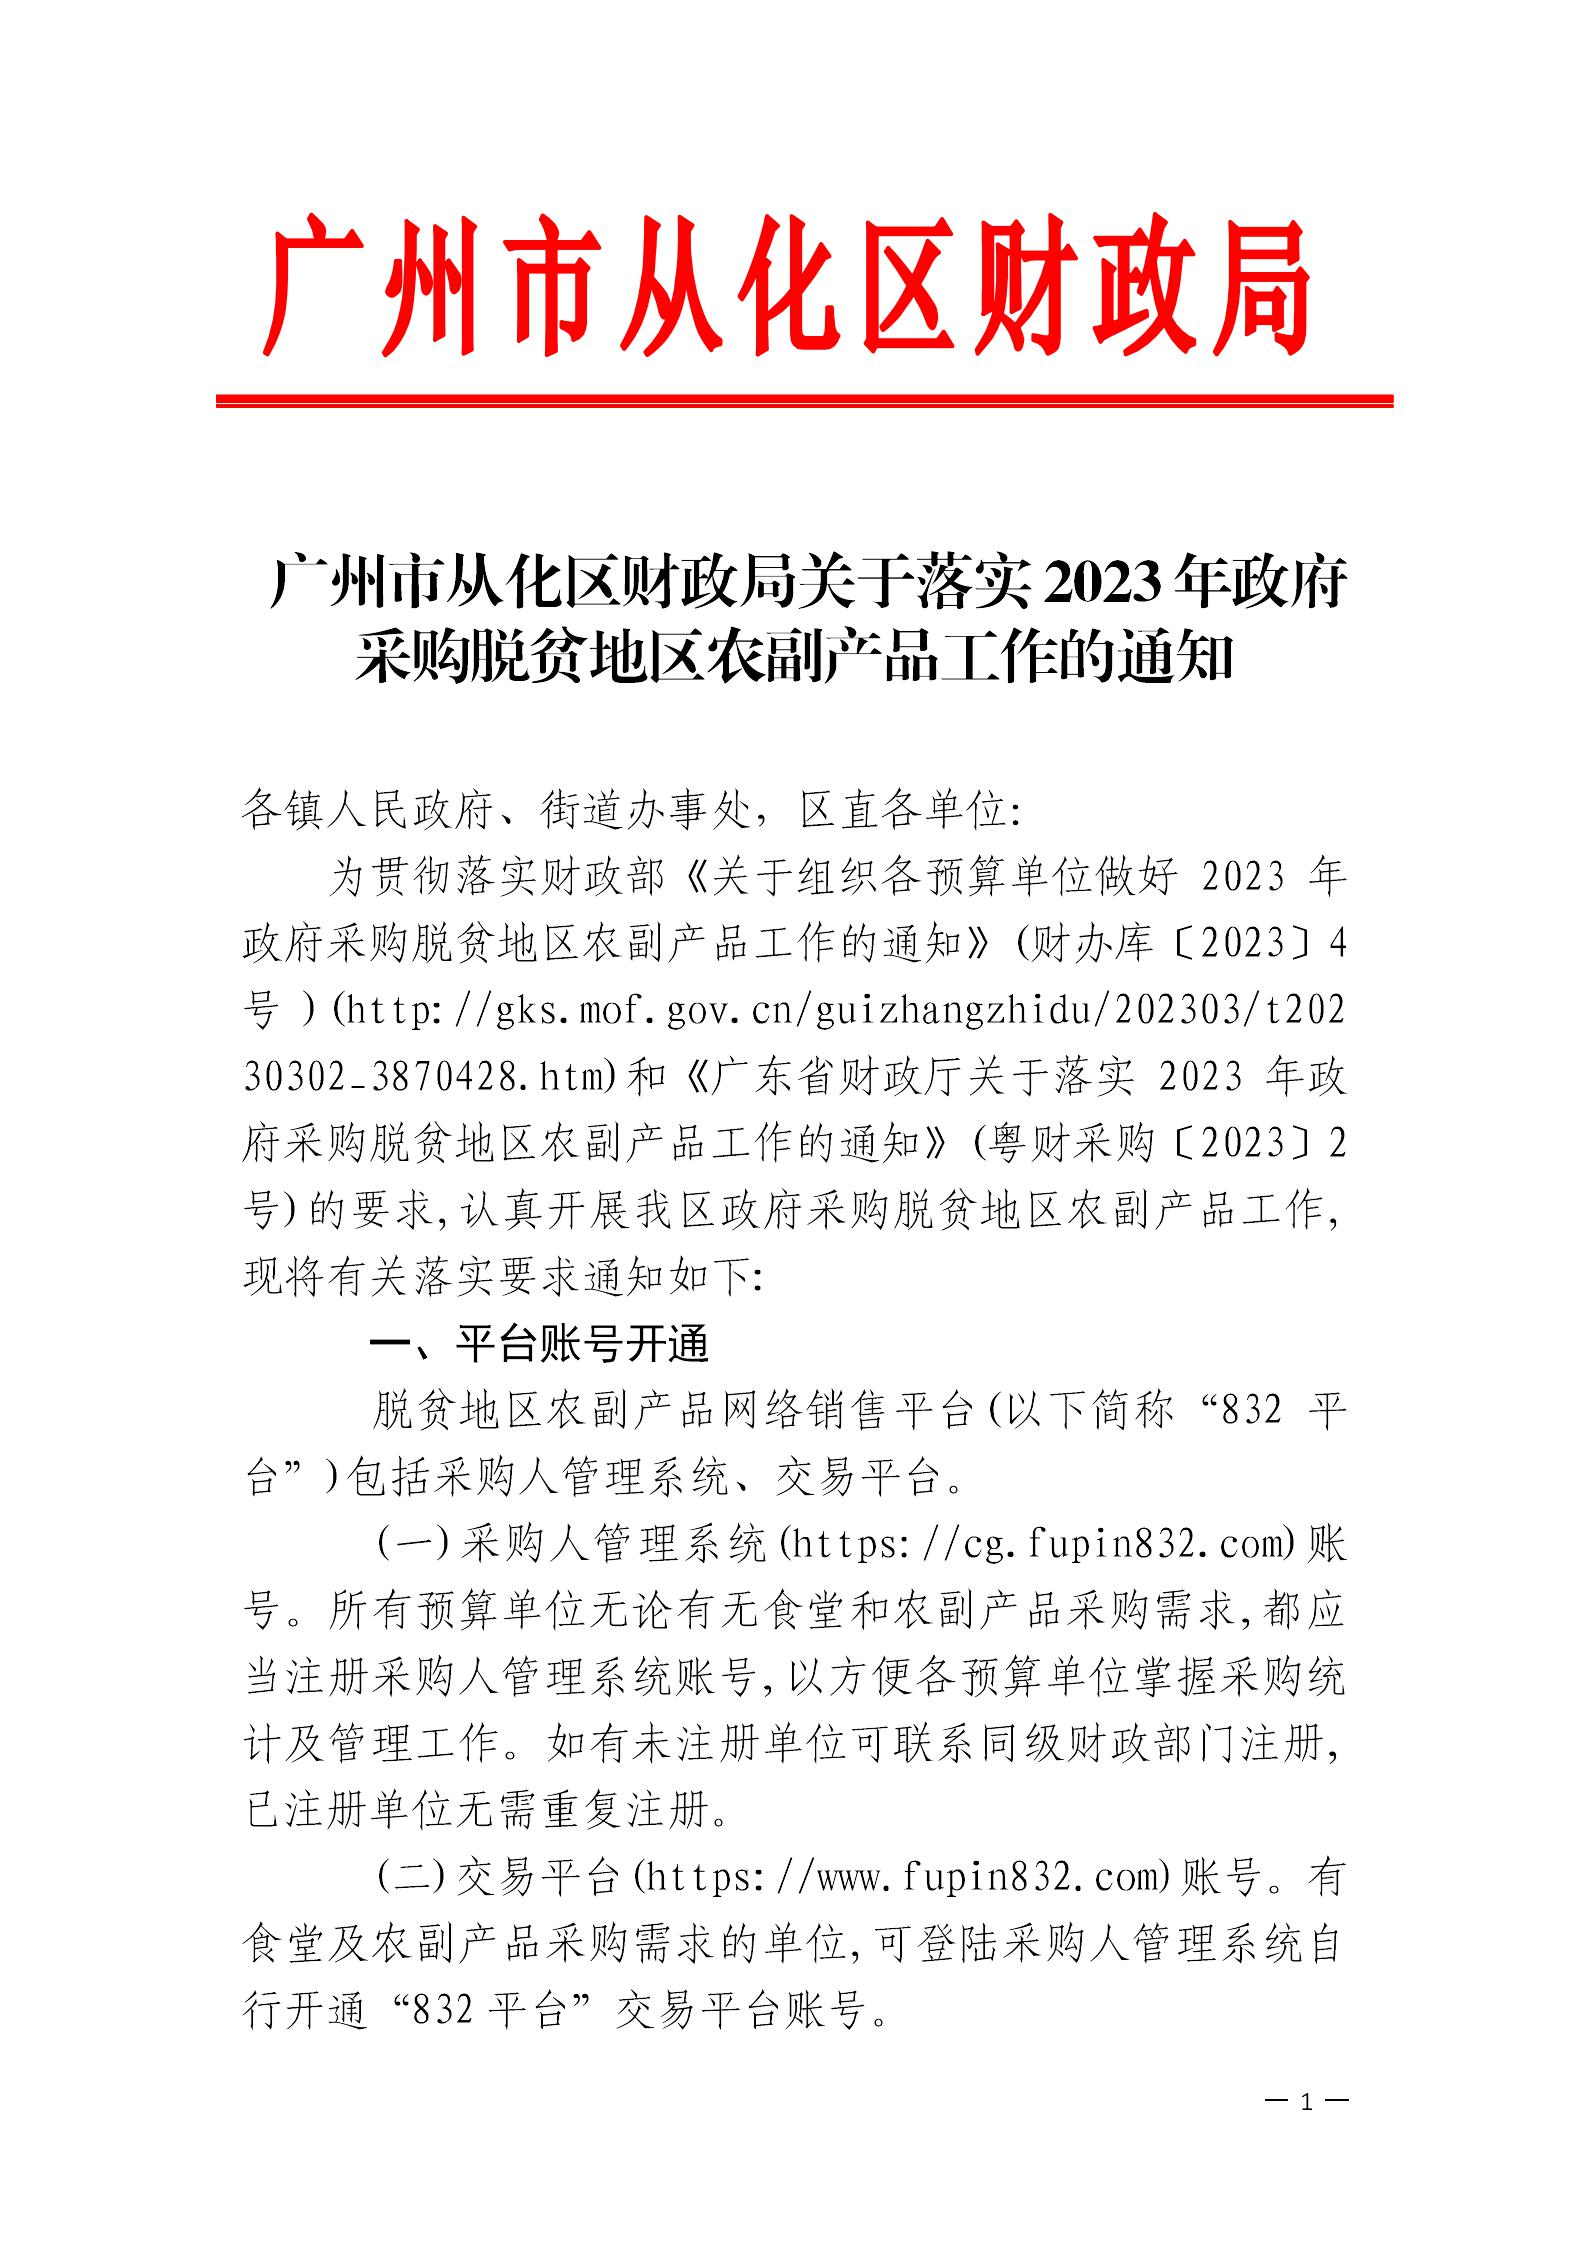 广州市从化区财政局关于落实2023年政府采购脱贫地区农副产品工作的通知_00.jpg